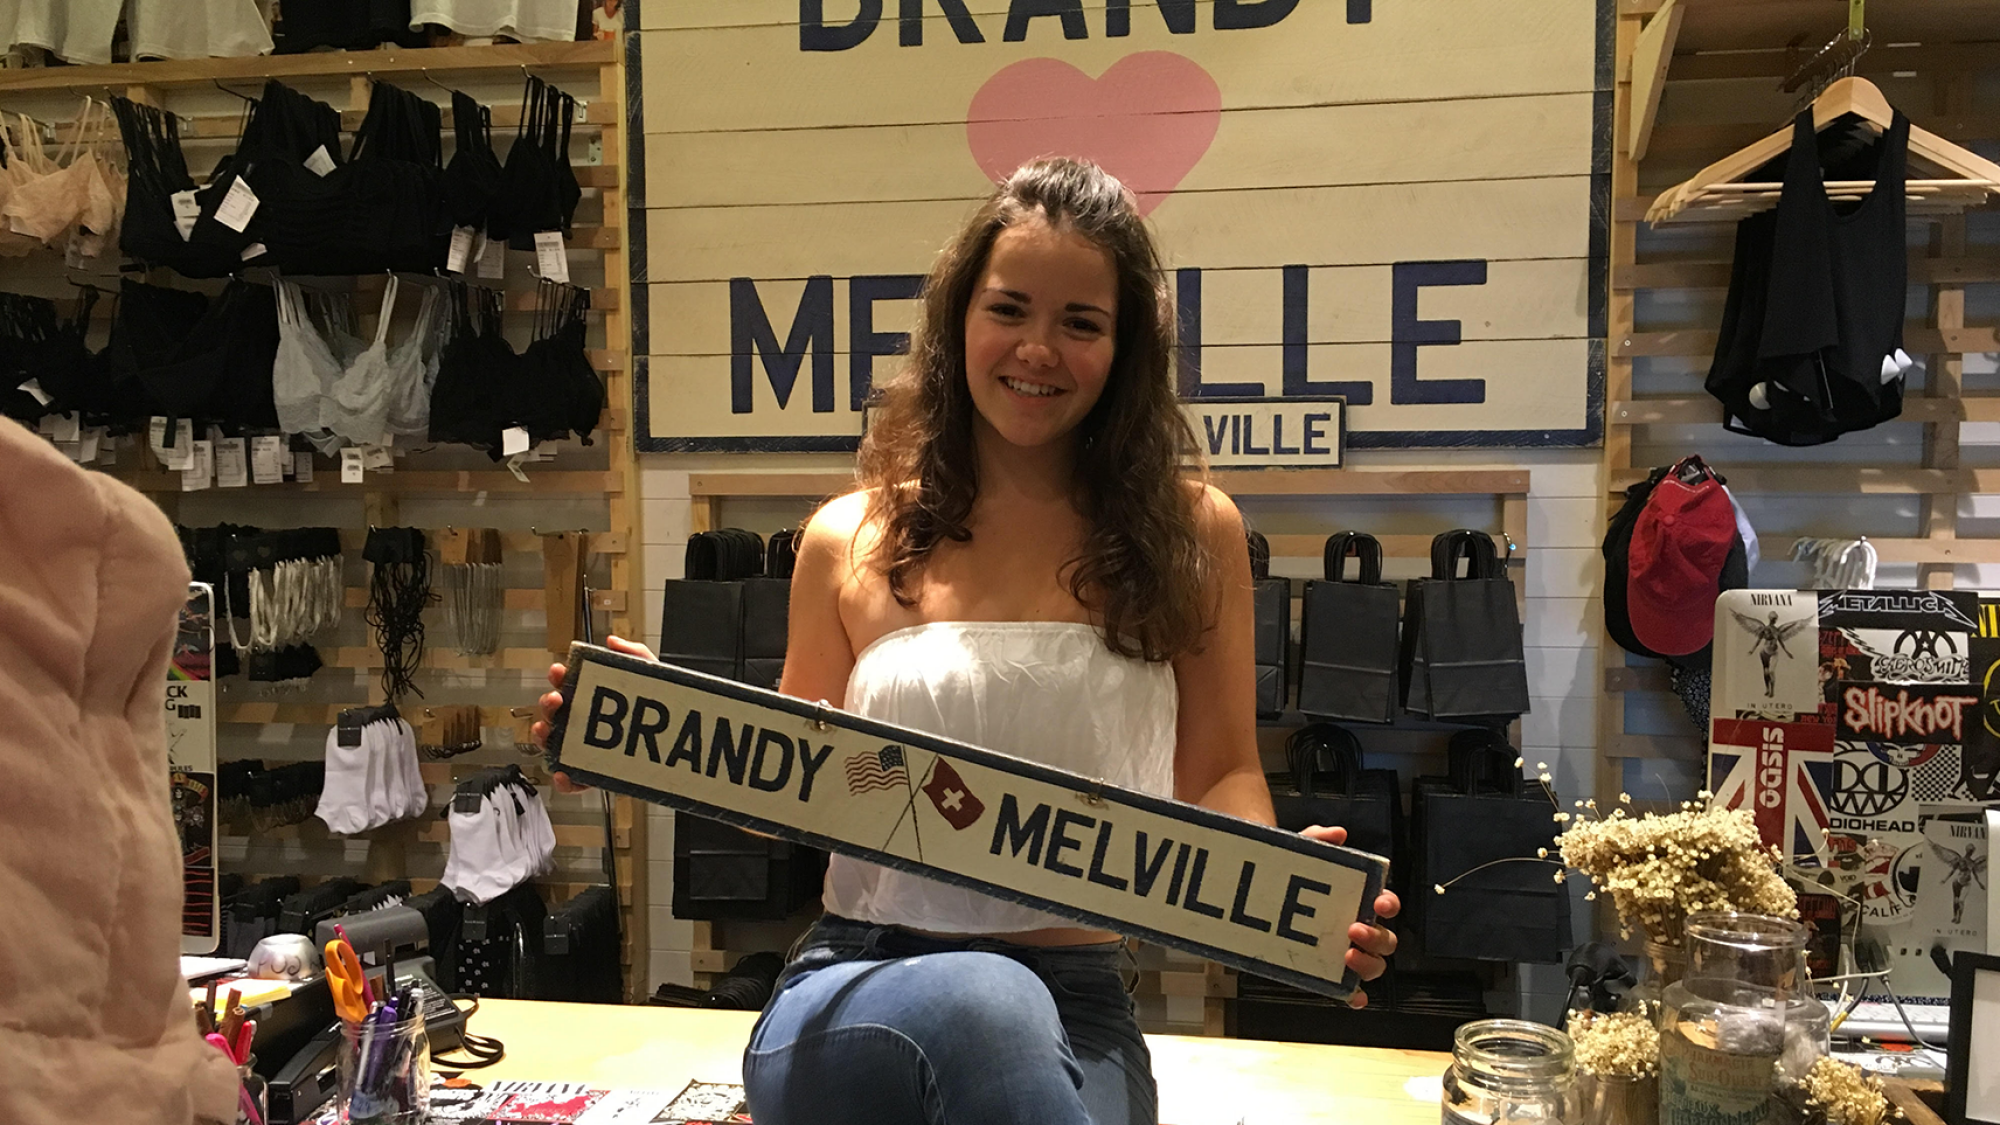 Une adolescente pose avec une pancarte Brandy Melville dans le magasin titulaire.